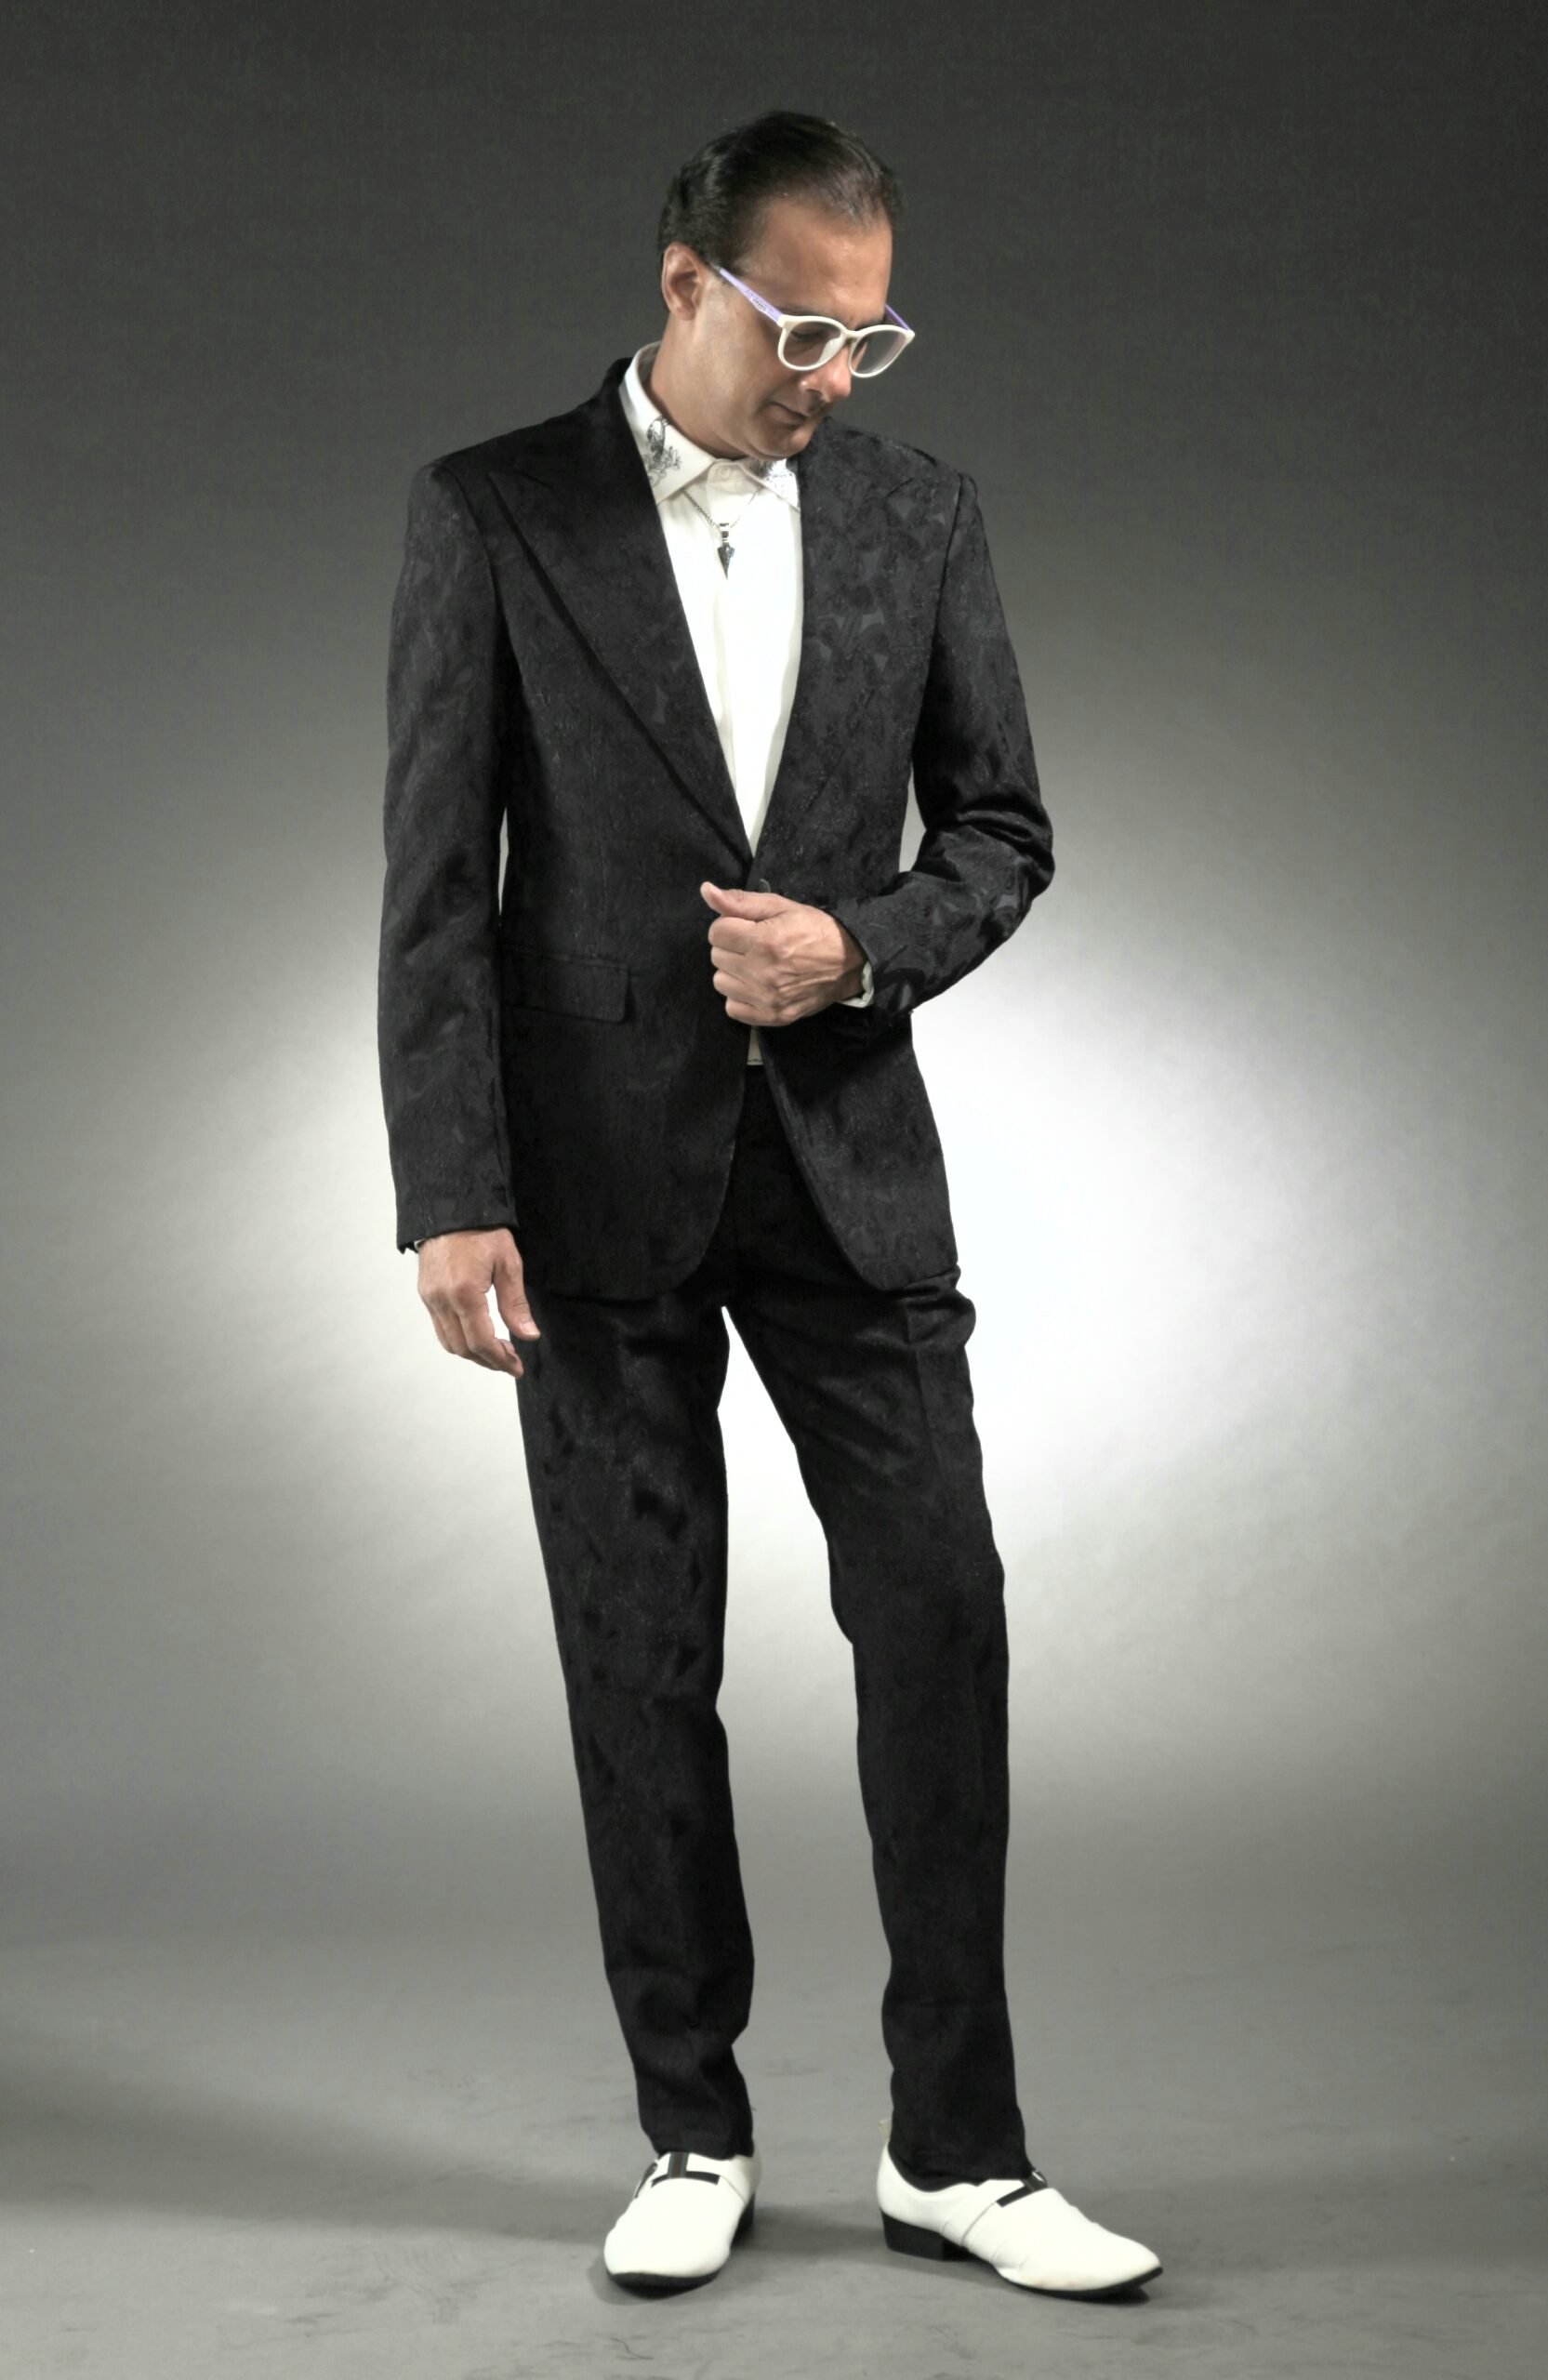 Mst 5030 01 Rent Rental Hire Tuxedo Suit Black Tie Suit Designer Suits Shop Tailor Tailors Singapore Wedding